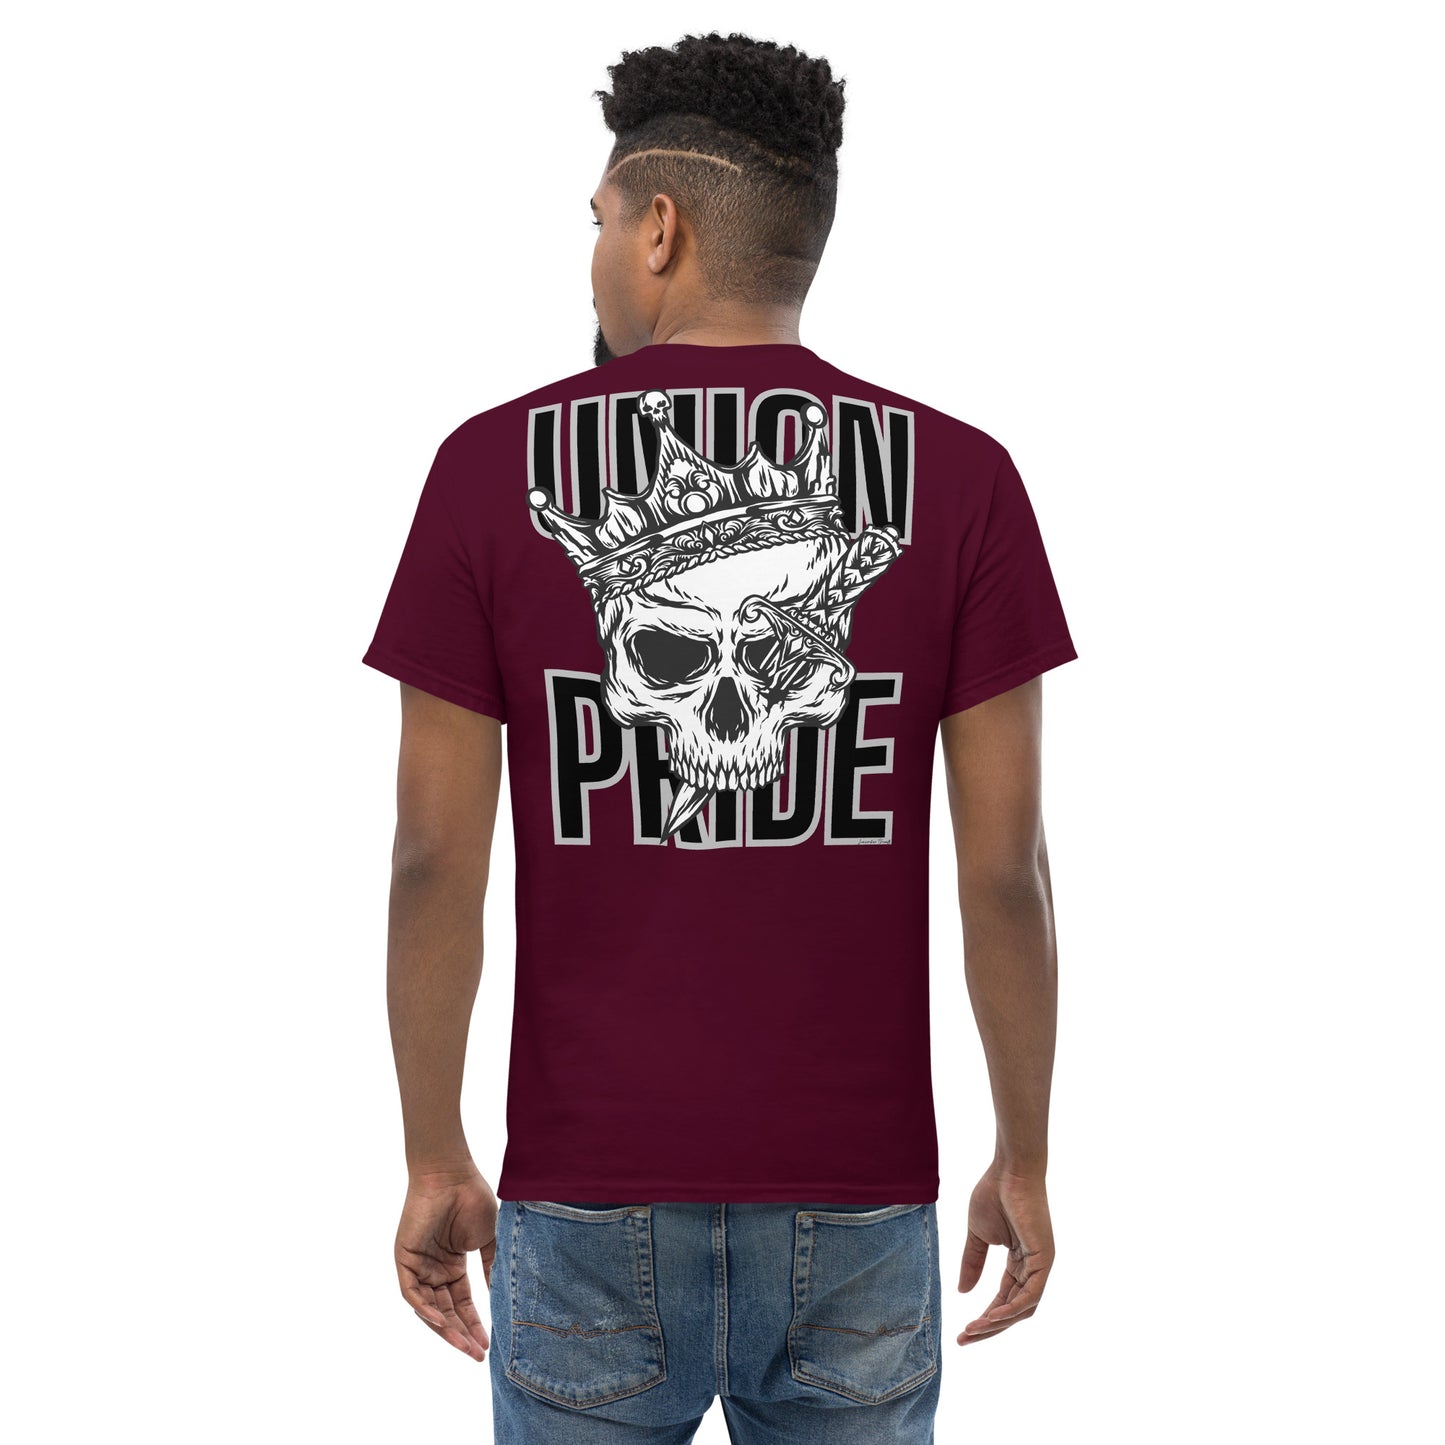 Union Pride T-shirt